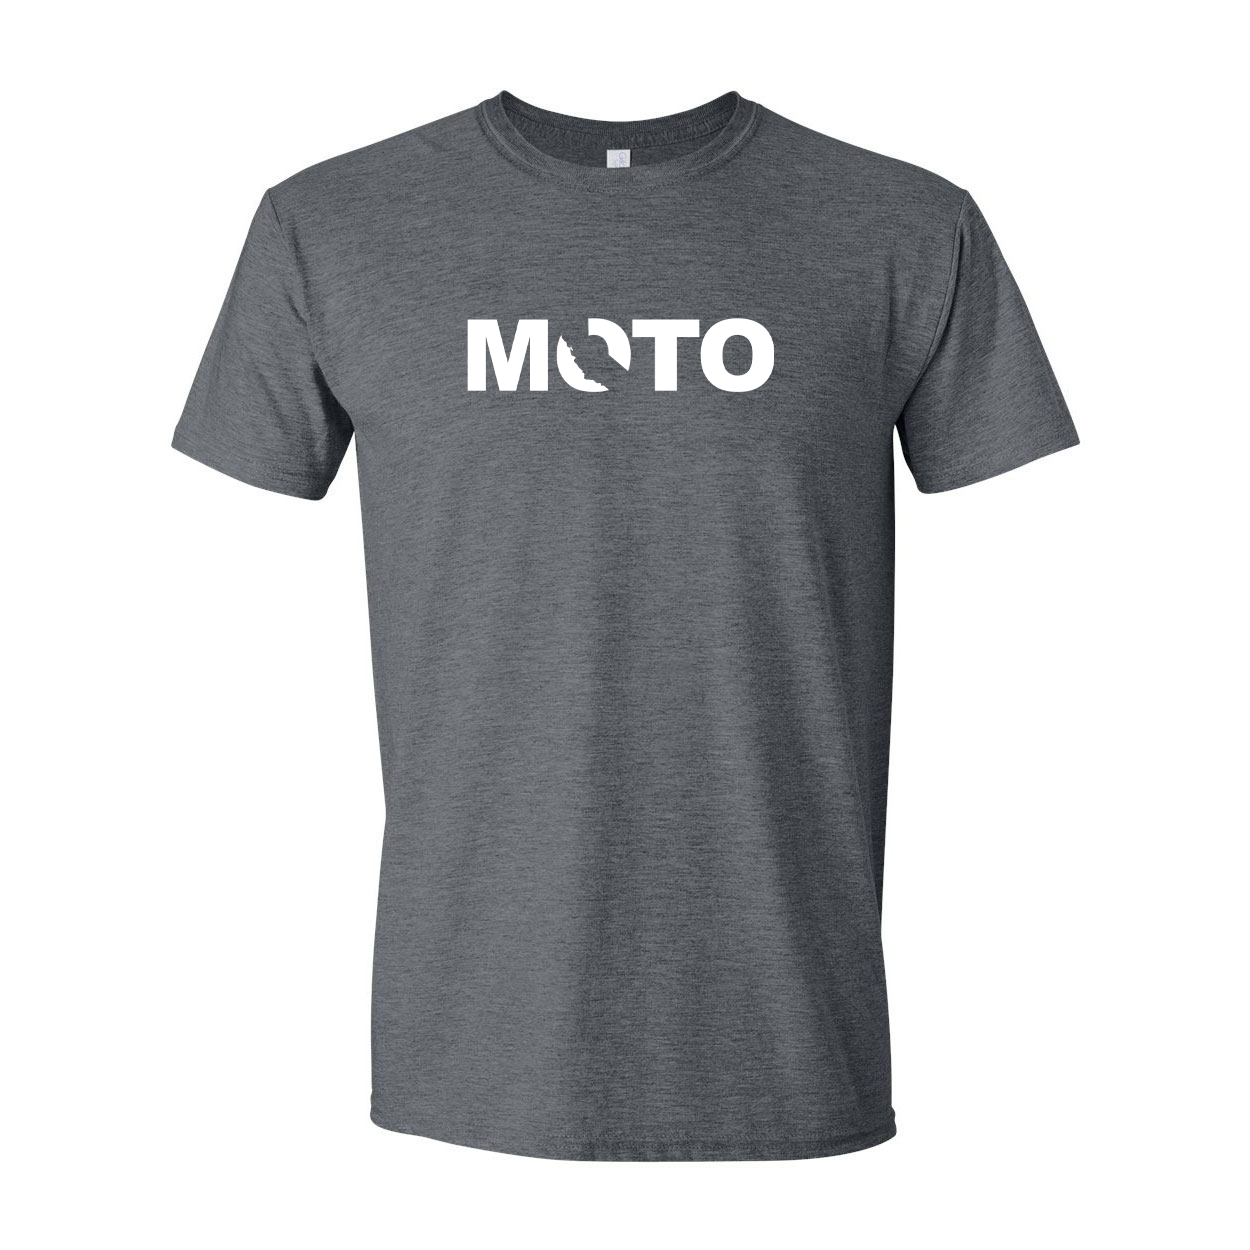 Moto California Classic T-Shirt Dark Heather Gray (White Logo)